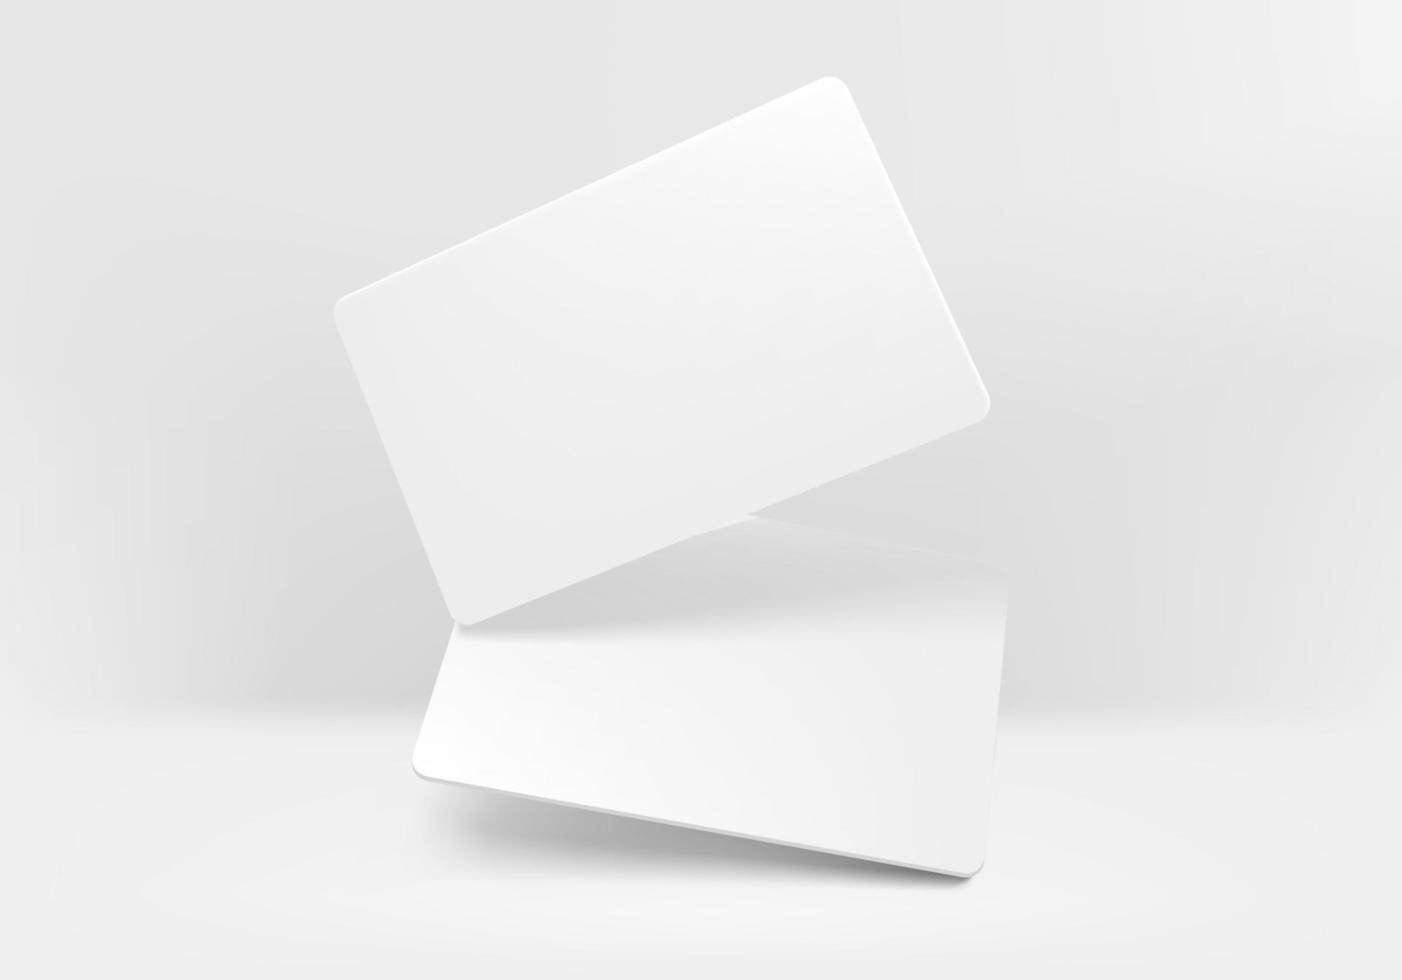 zwei weiße leere Visitenkarten auf hellem Hintergrundvektormodell vektor